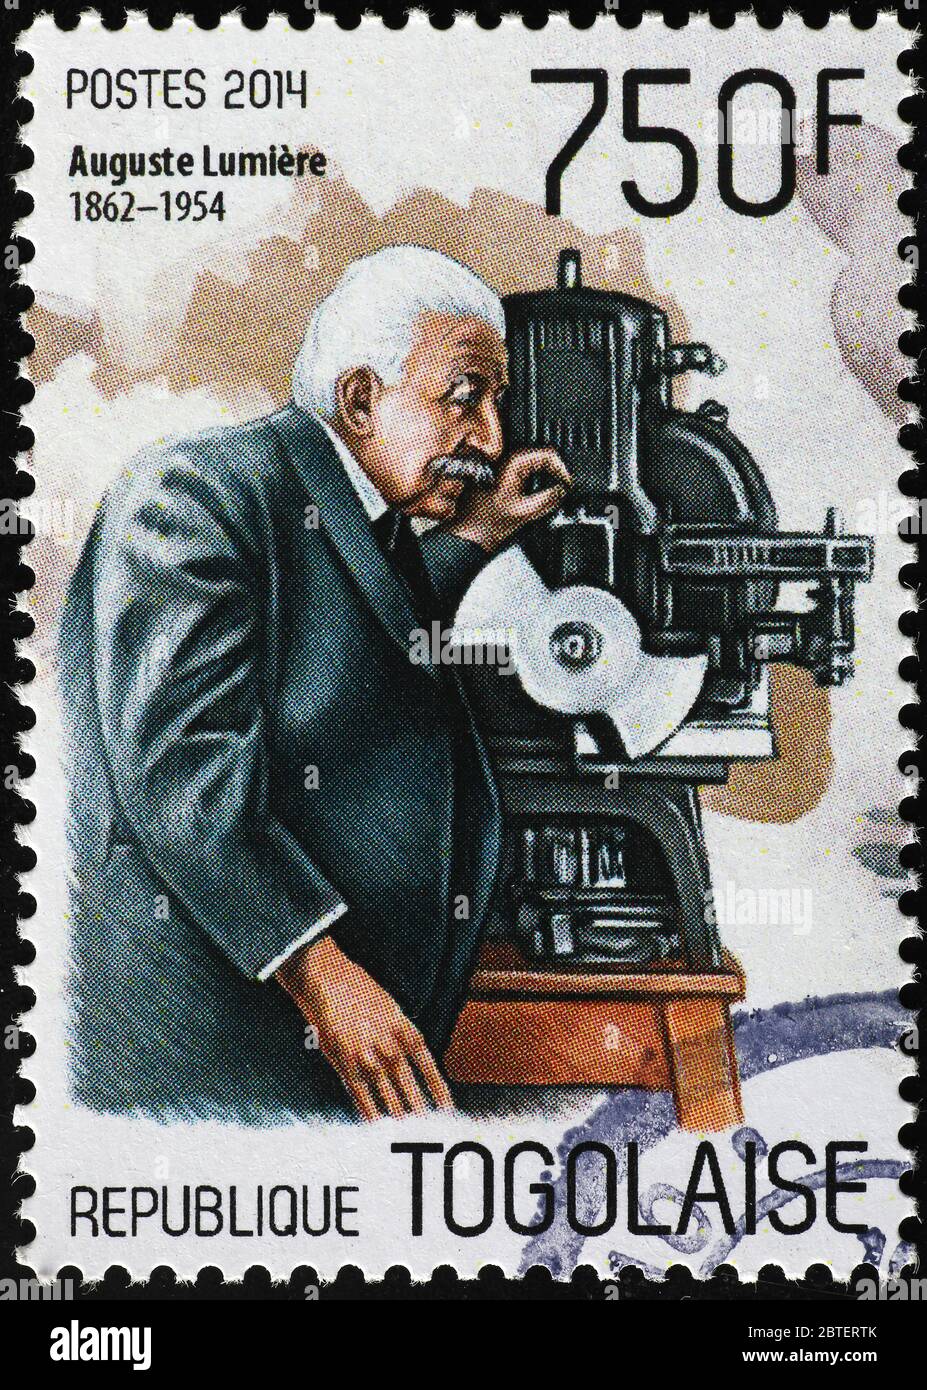 Porträt von Auguste Lumiere auf Briefmarke Stockfoto